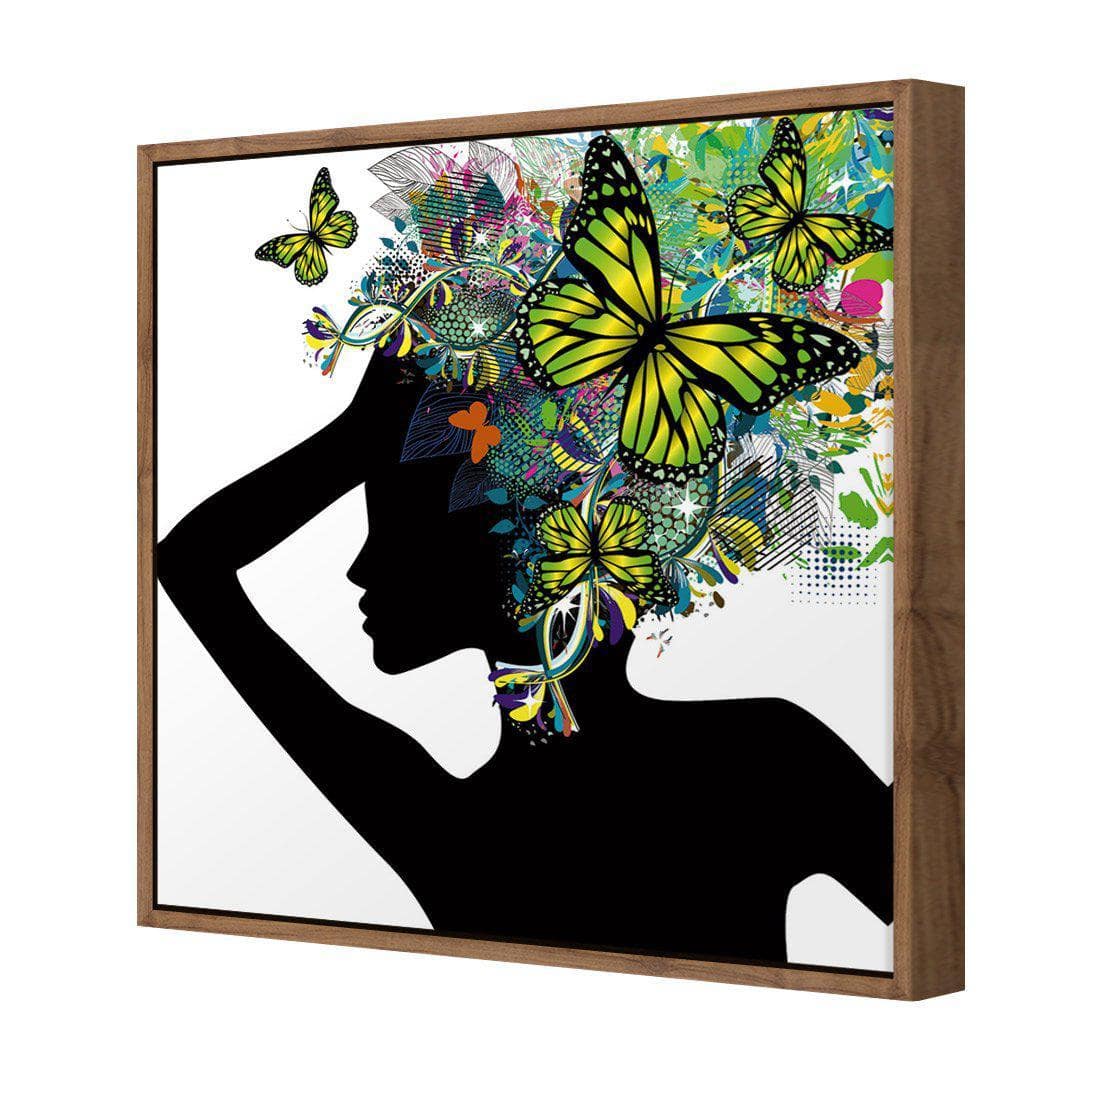 Silhouette Of Butterflies Canvas Art-Canvas-Wall Art Designs-30x30cm-Canvas - Natural Frame-Wall Art Designs